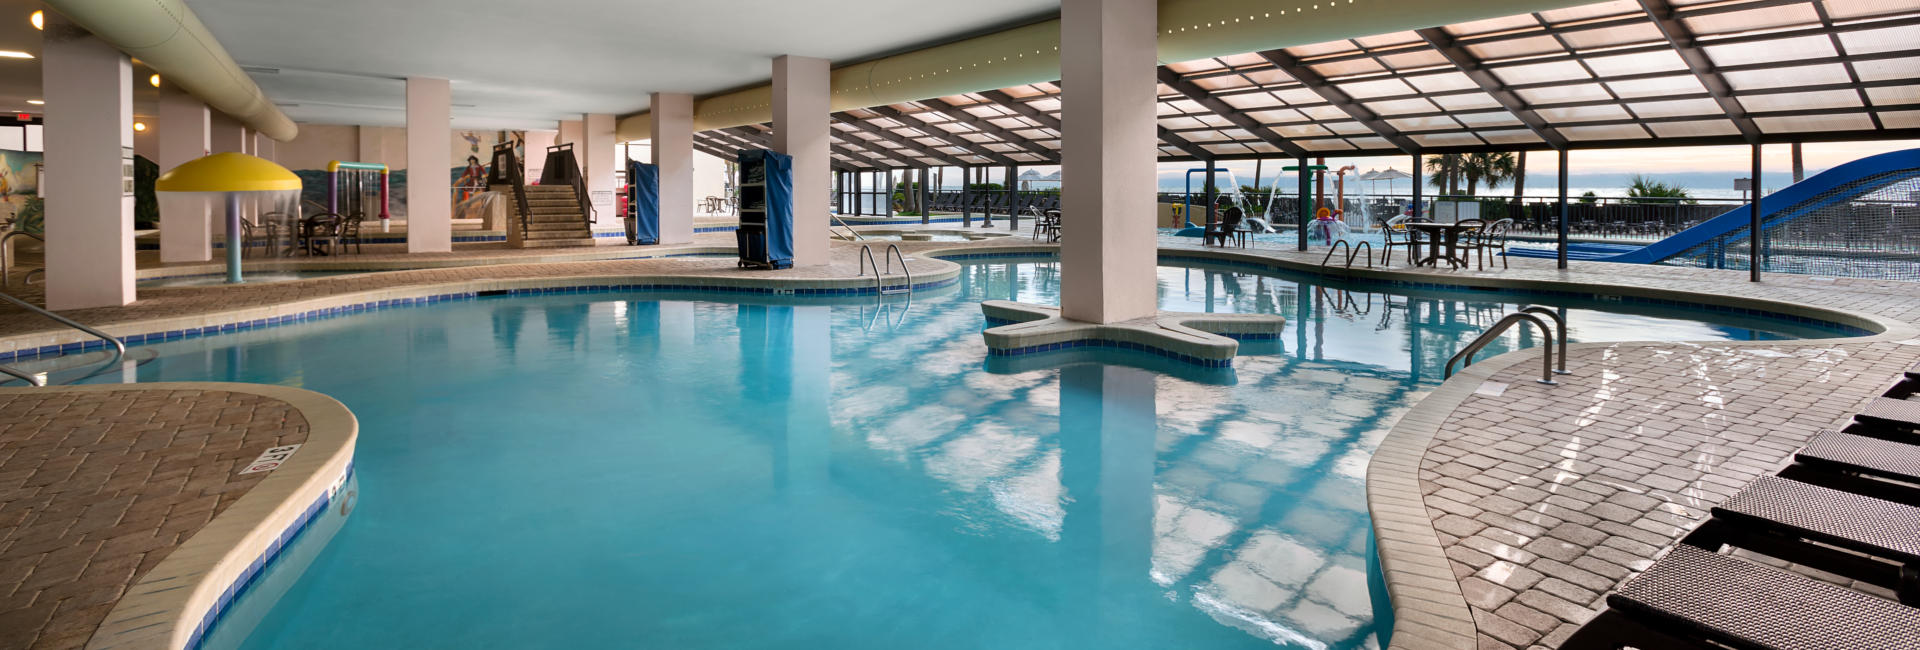 Breakers Resort Indoor Pool Myrtle Beach 1920x650 1 